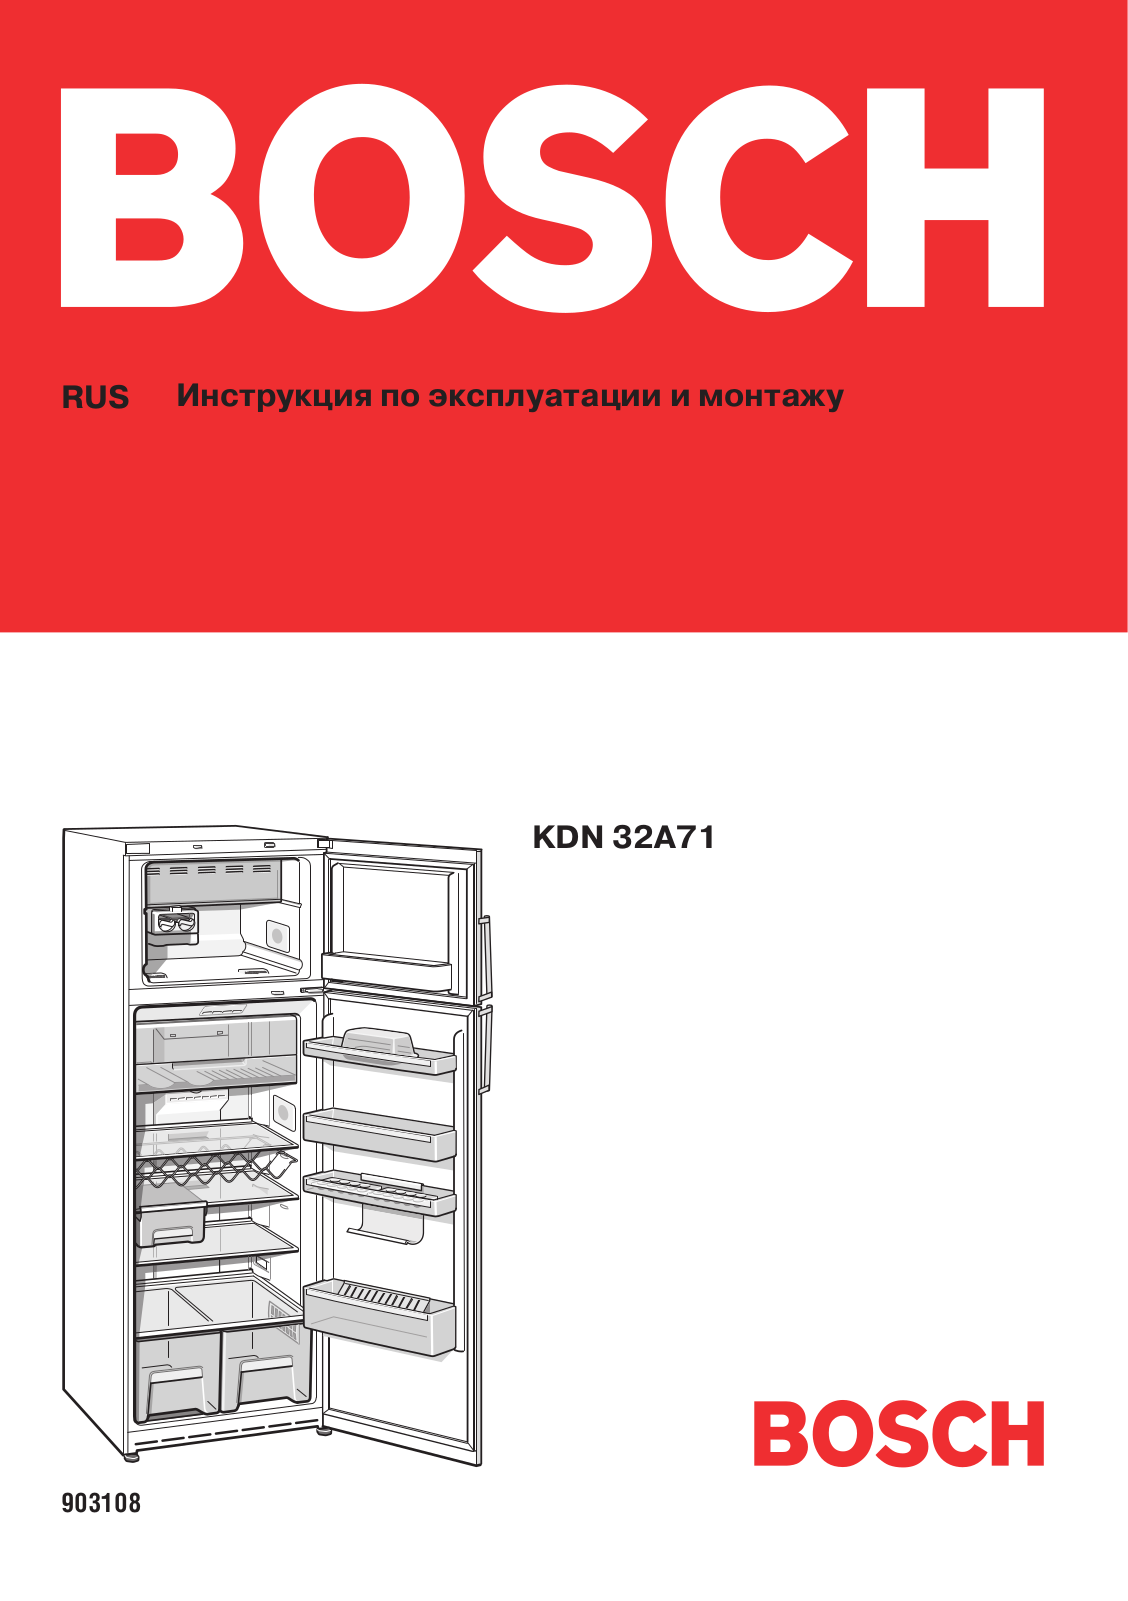 Bosch KDN 32A71 User Manual